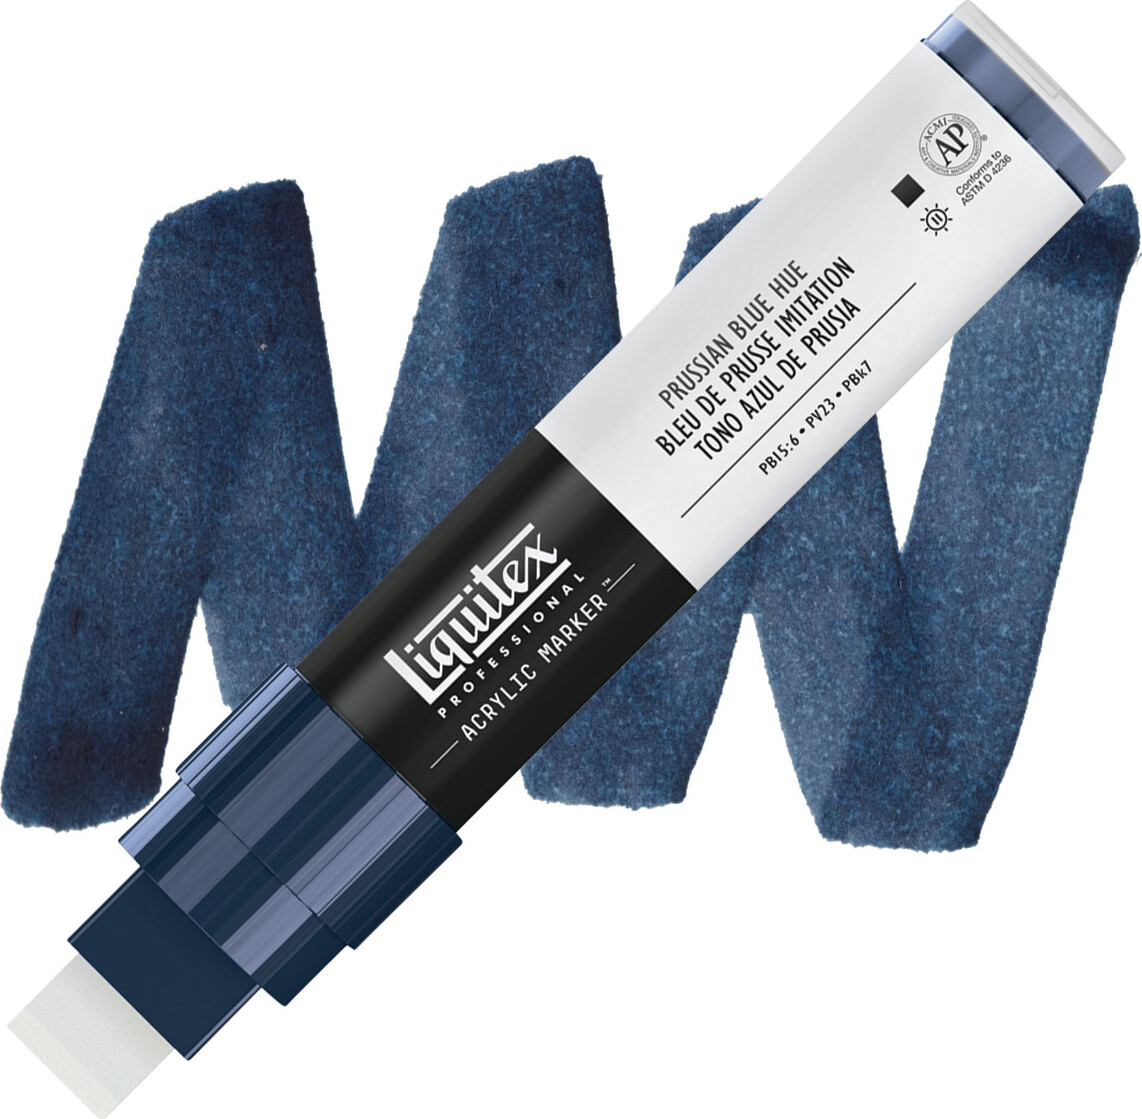 Liquitex - Paint Marker Wide Tusch - Prussian Blue Hue